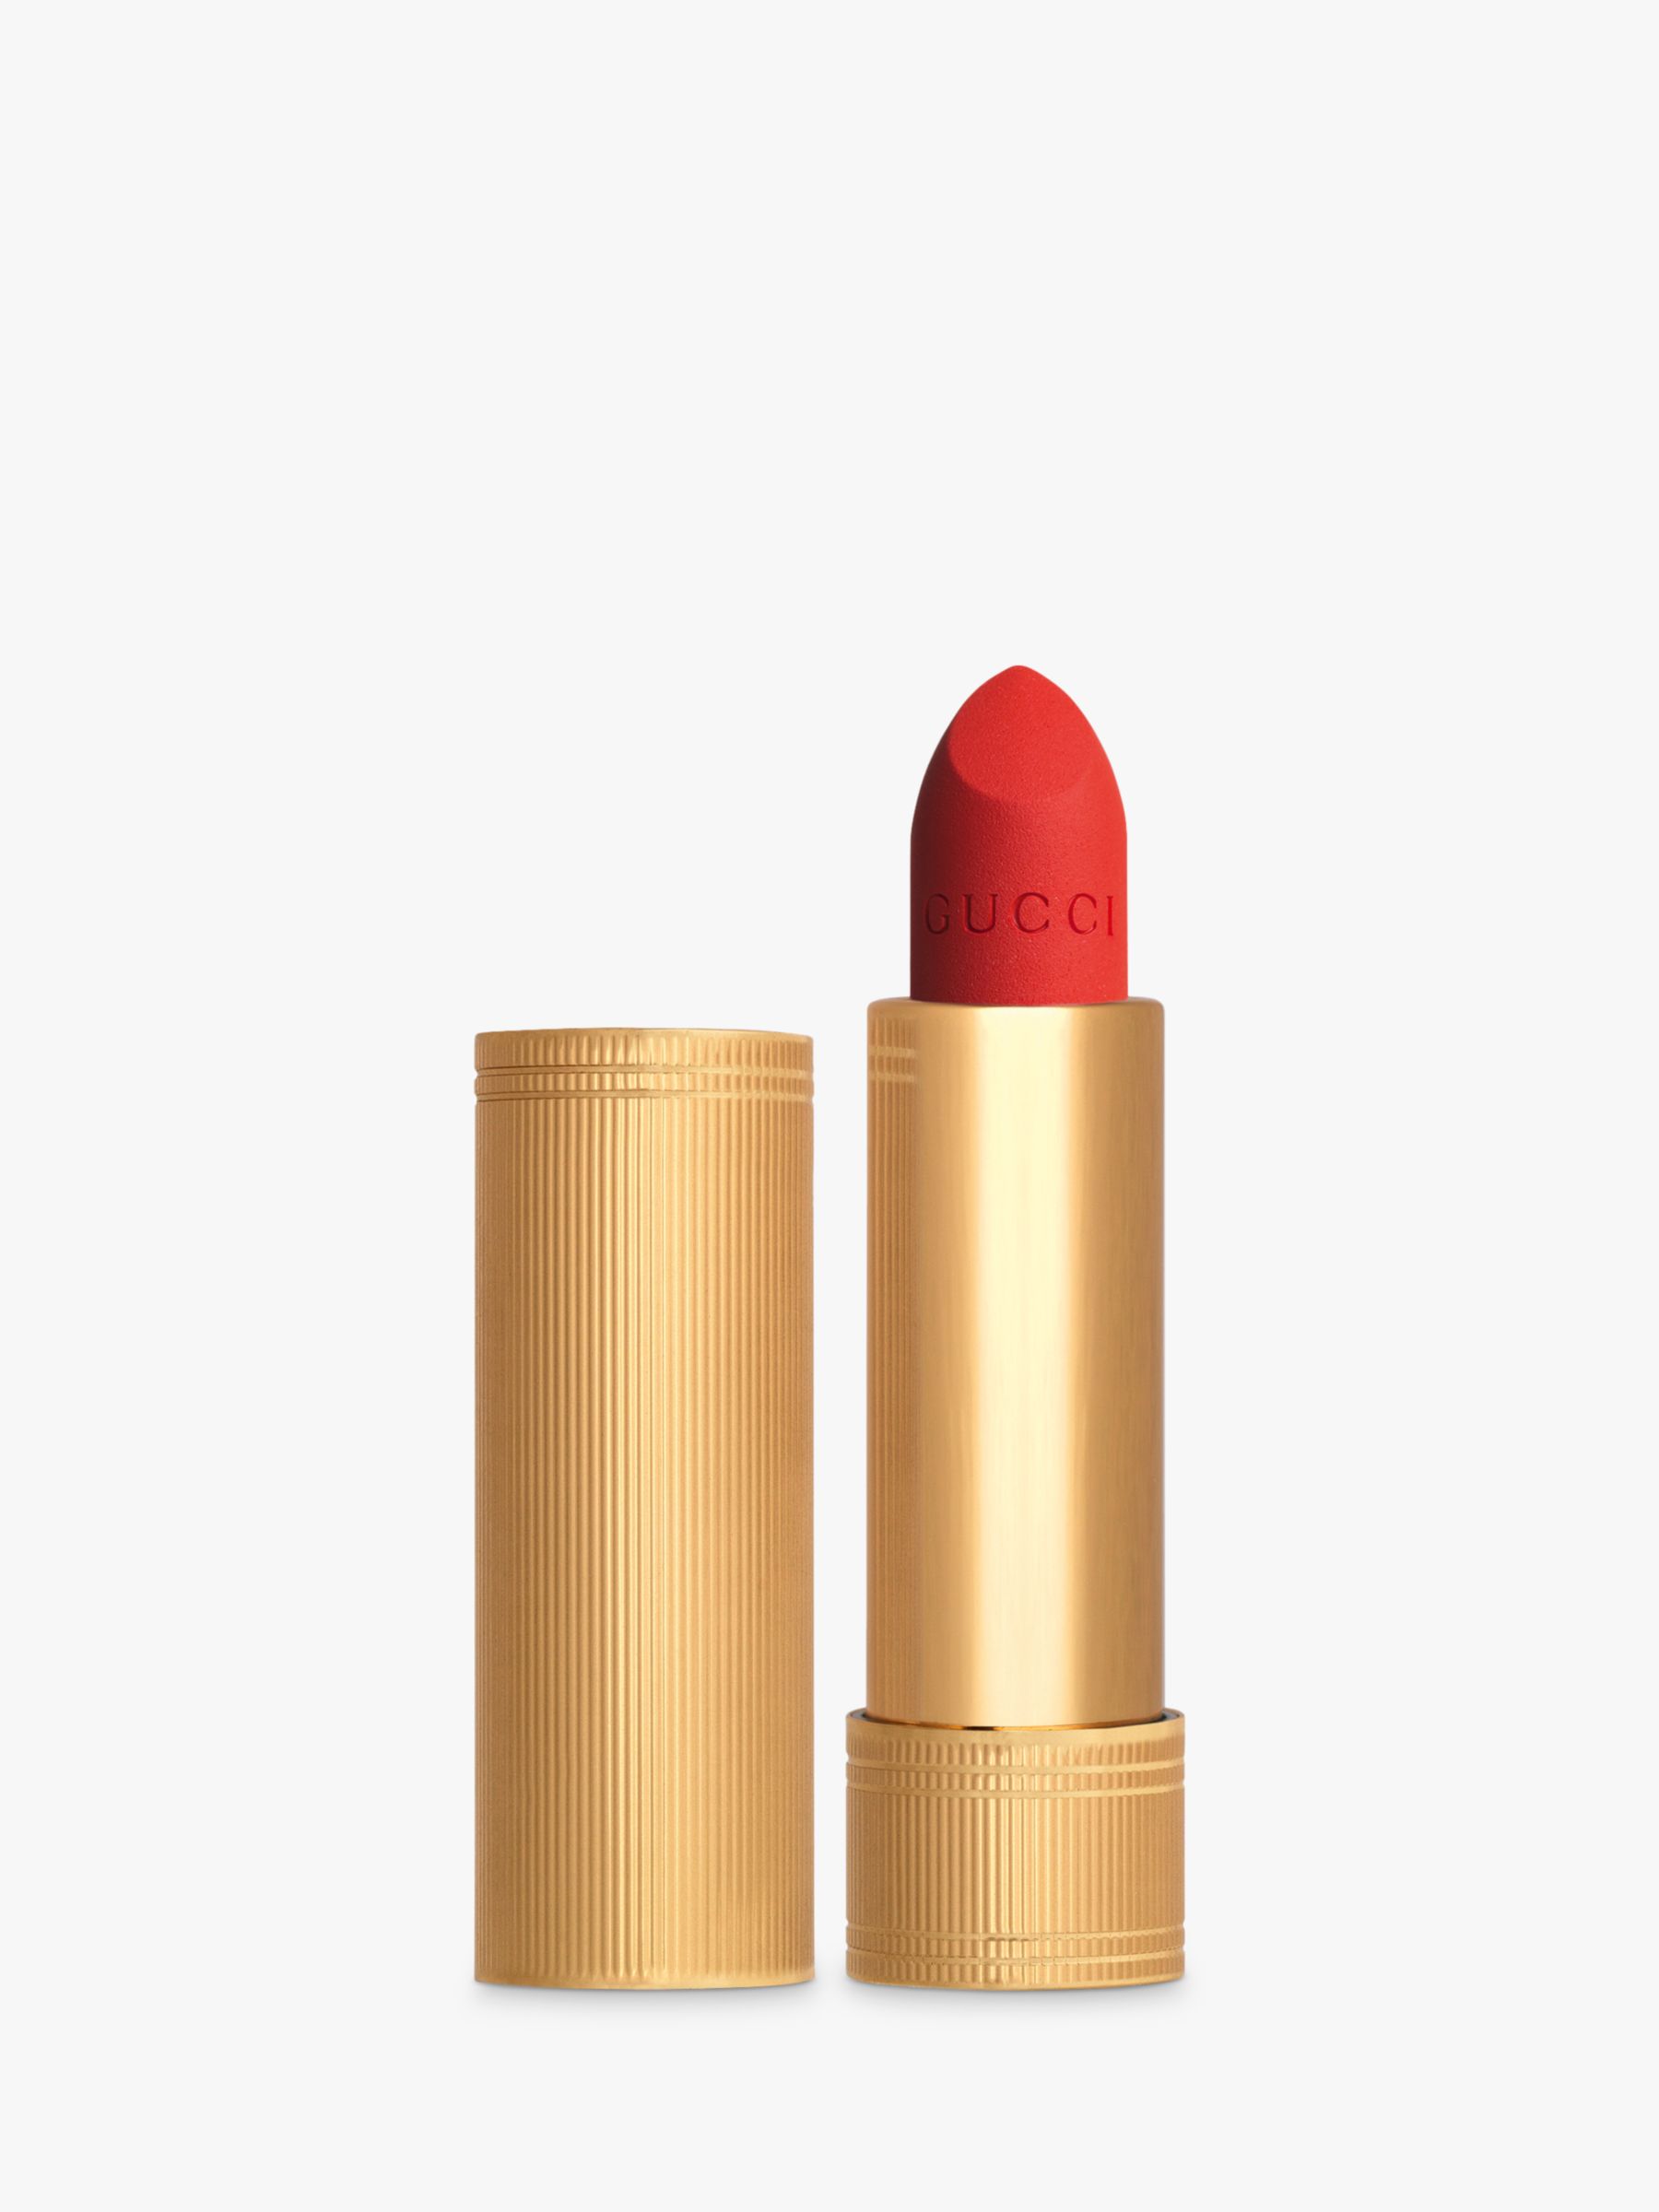 Gucci Rouge À Lèvres Matte Lipstick, 302 Agatha Orange 1